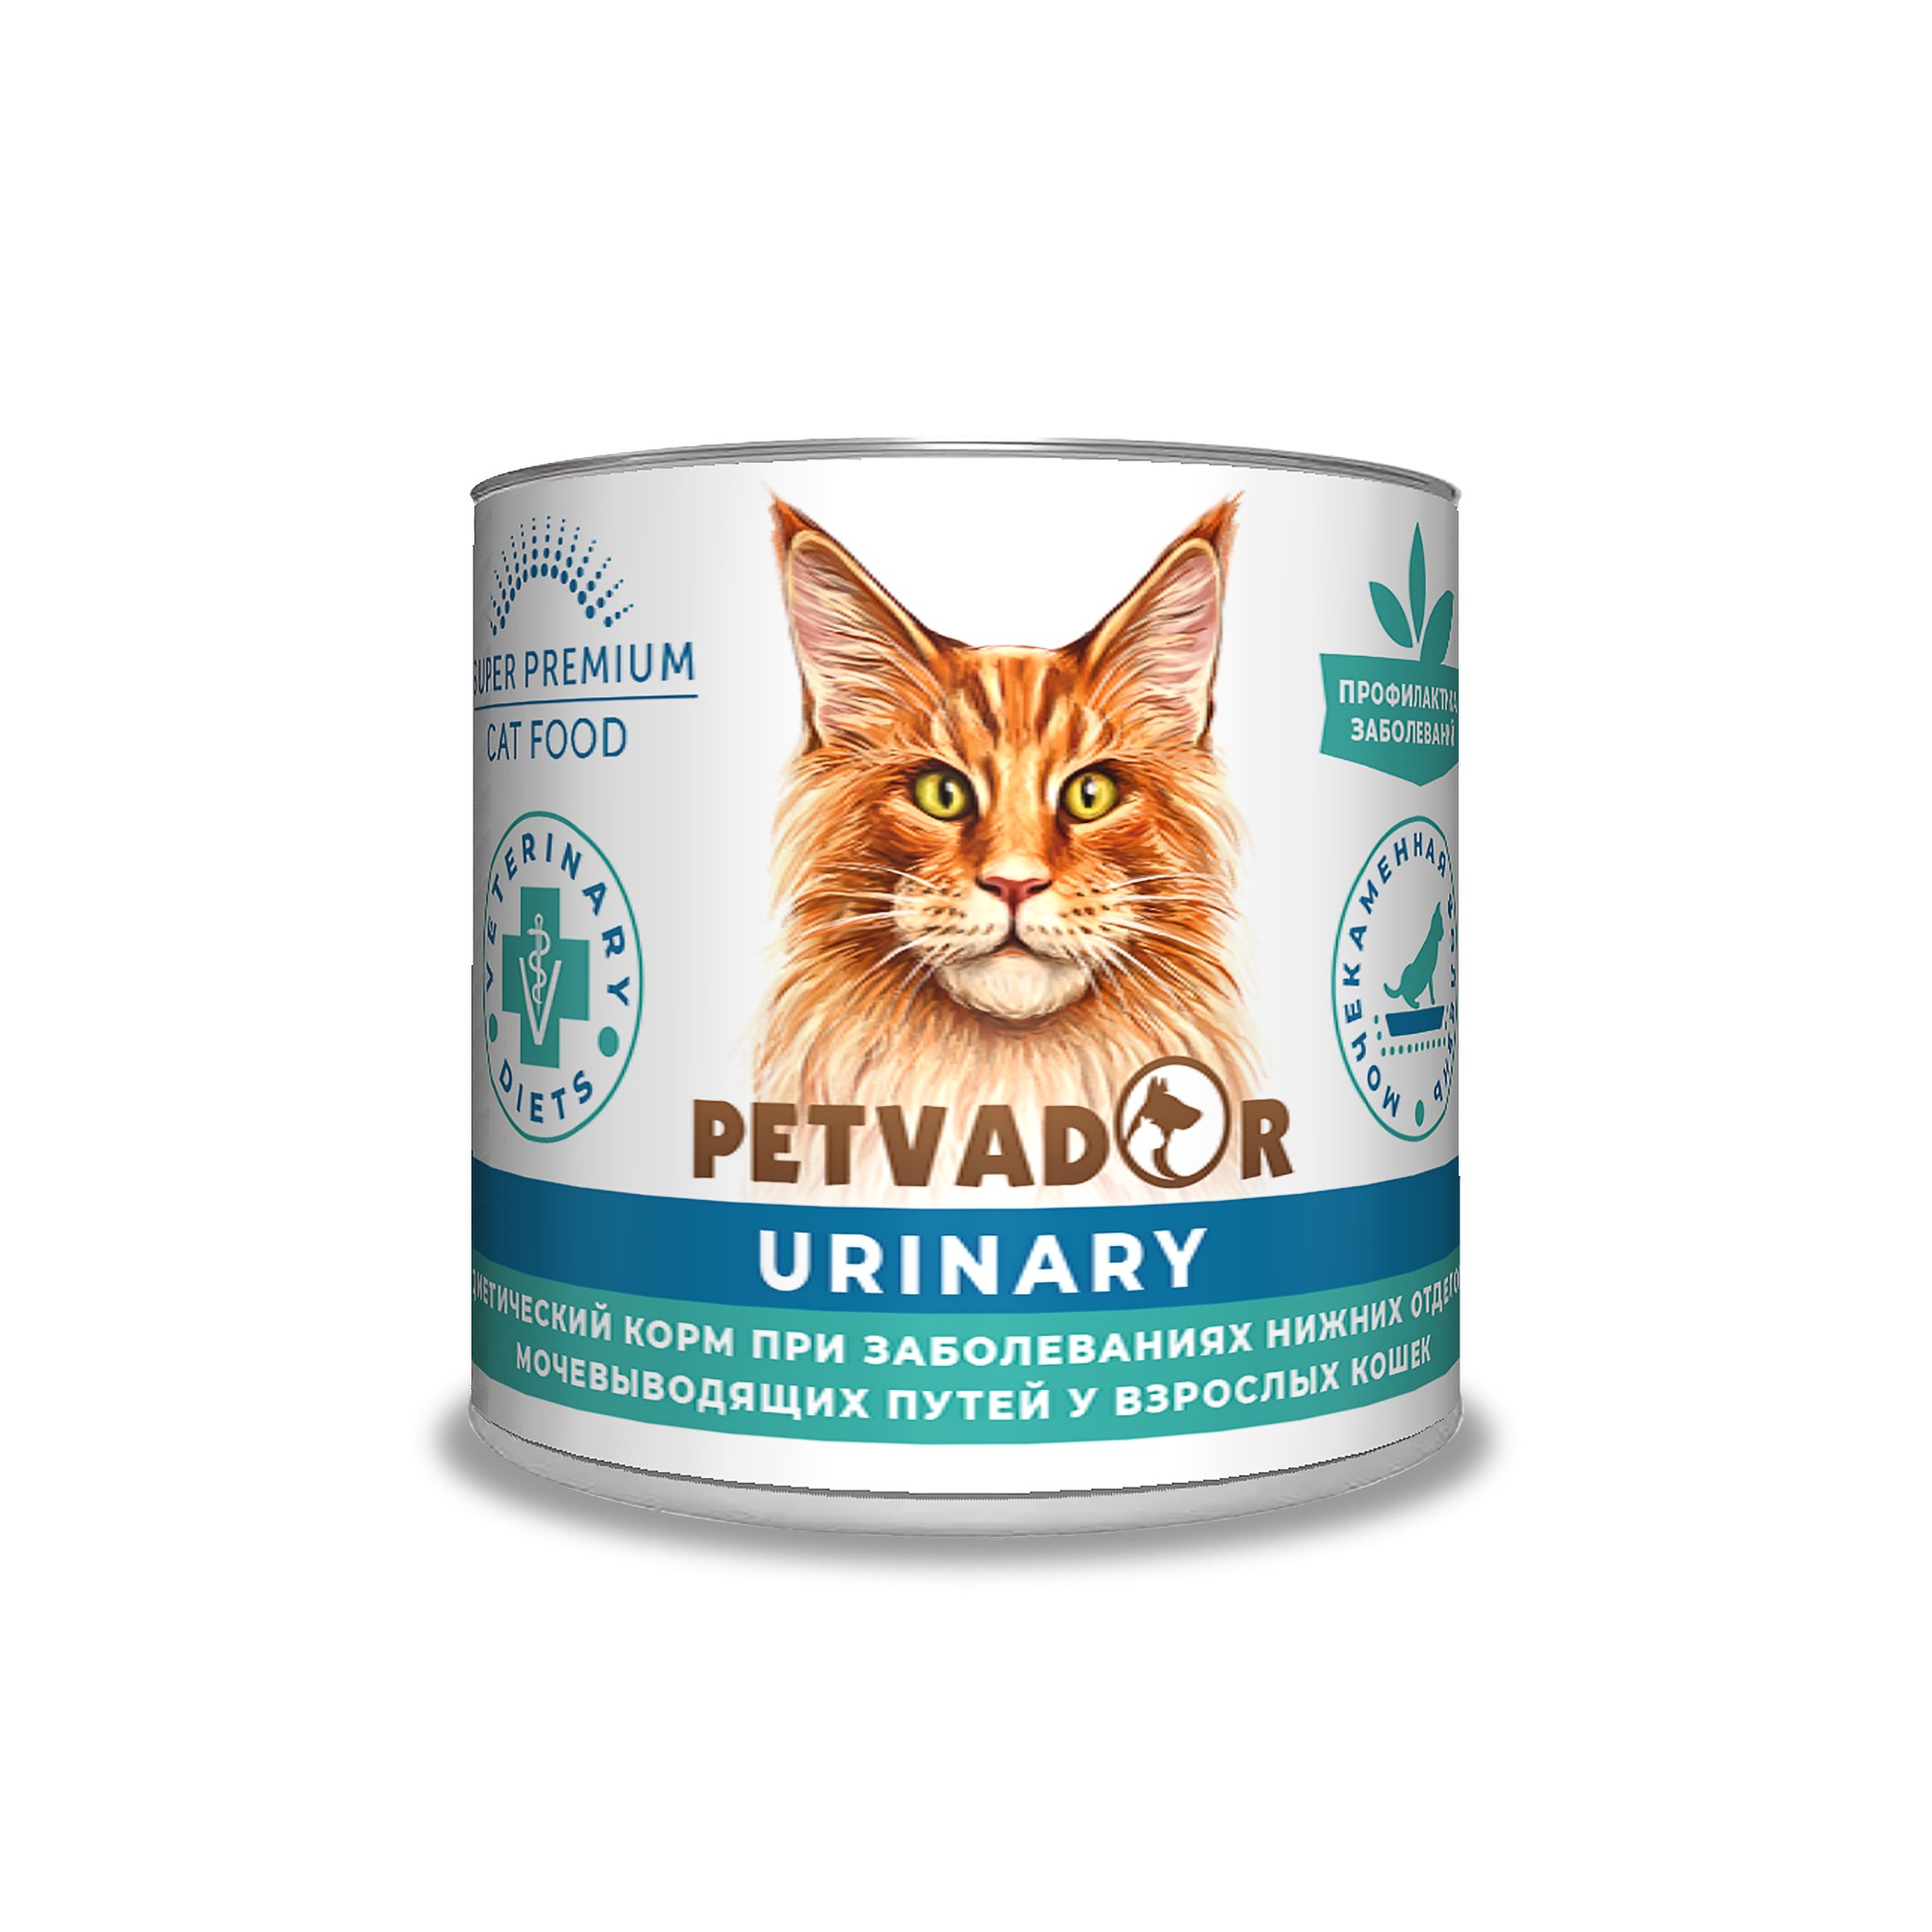 Petvador VET Urinary консервы для кошек 240 г